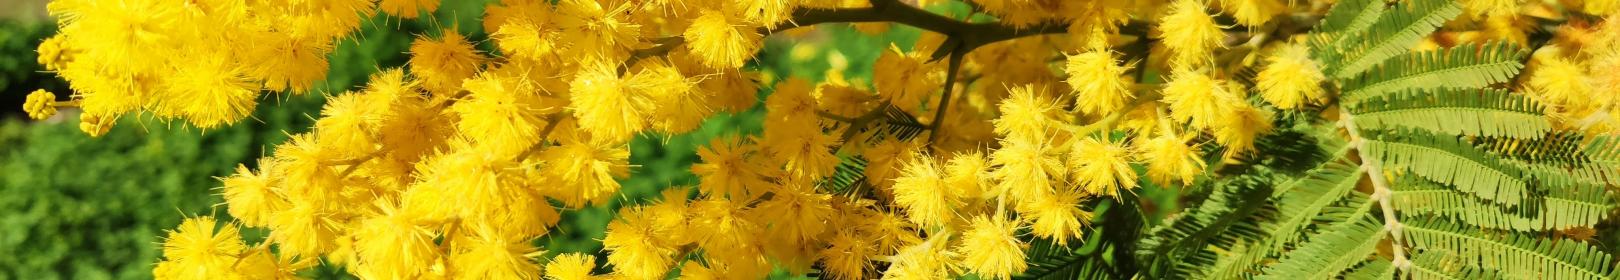 Mimosa, acacia dealbata, ramo con foglie e infiorescenza (foto A.Saba)